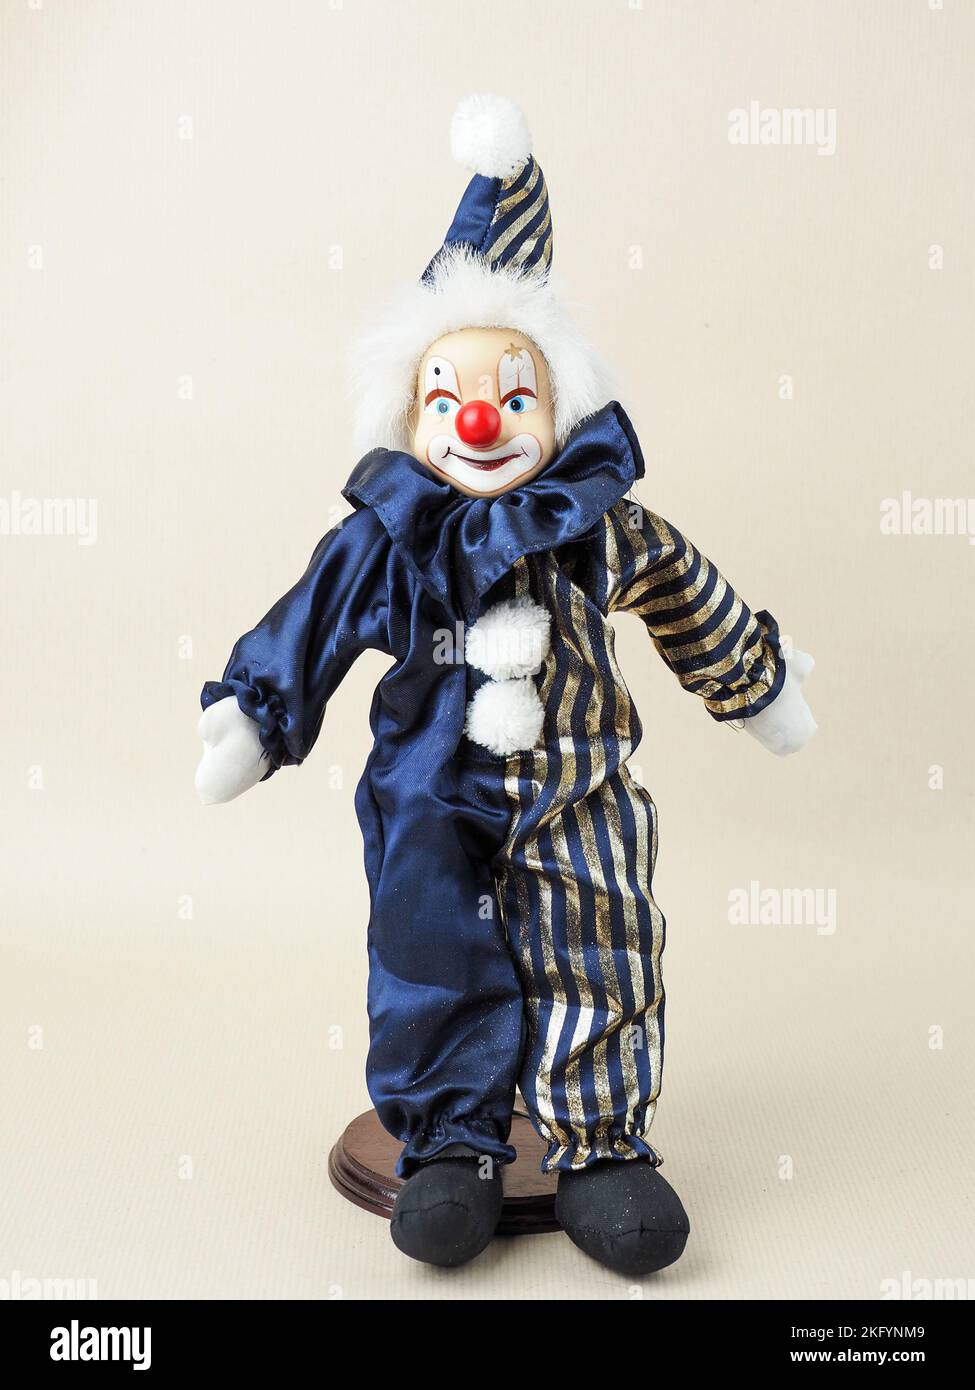 Dans cette illustration, un clown blanc vintage avec poupée nez rouge dans un costume bleu avec chapeau. Des poupées en porcelaine sont apparues au 18th siècle en France. Ils ont été utilisés pour promouvoir la mode française dans le monde. Habituellement, de telles poupées étaient fournies avec un grand nombre de vêtements et envoyées aux clients sous forme de mini mannequins. Banque D'Images